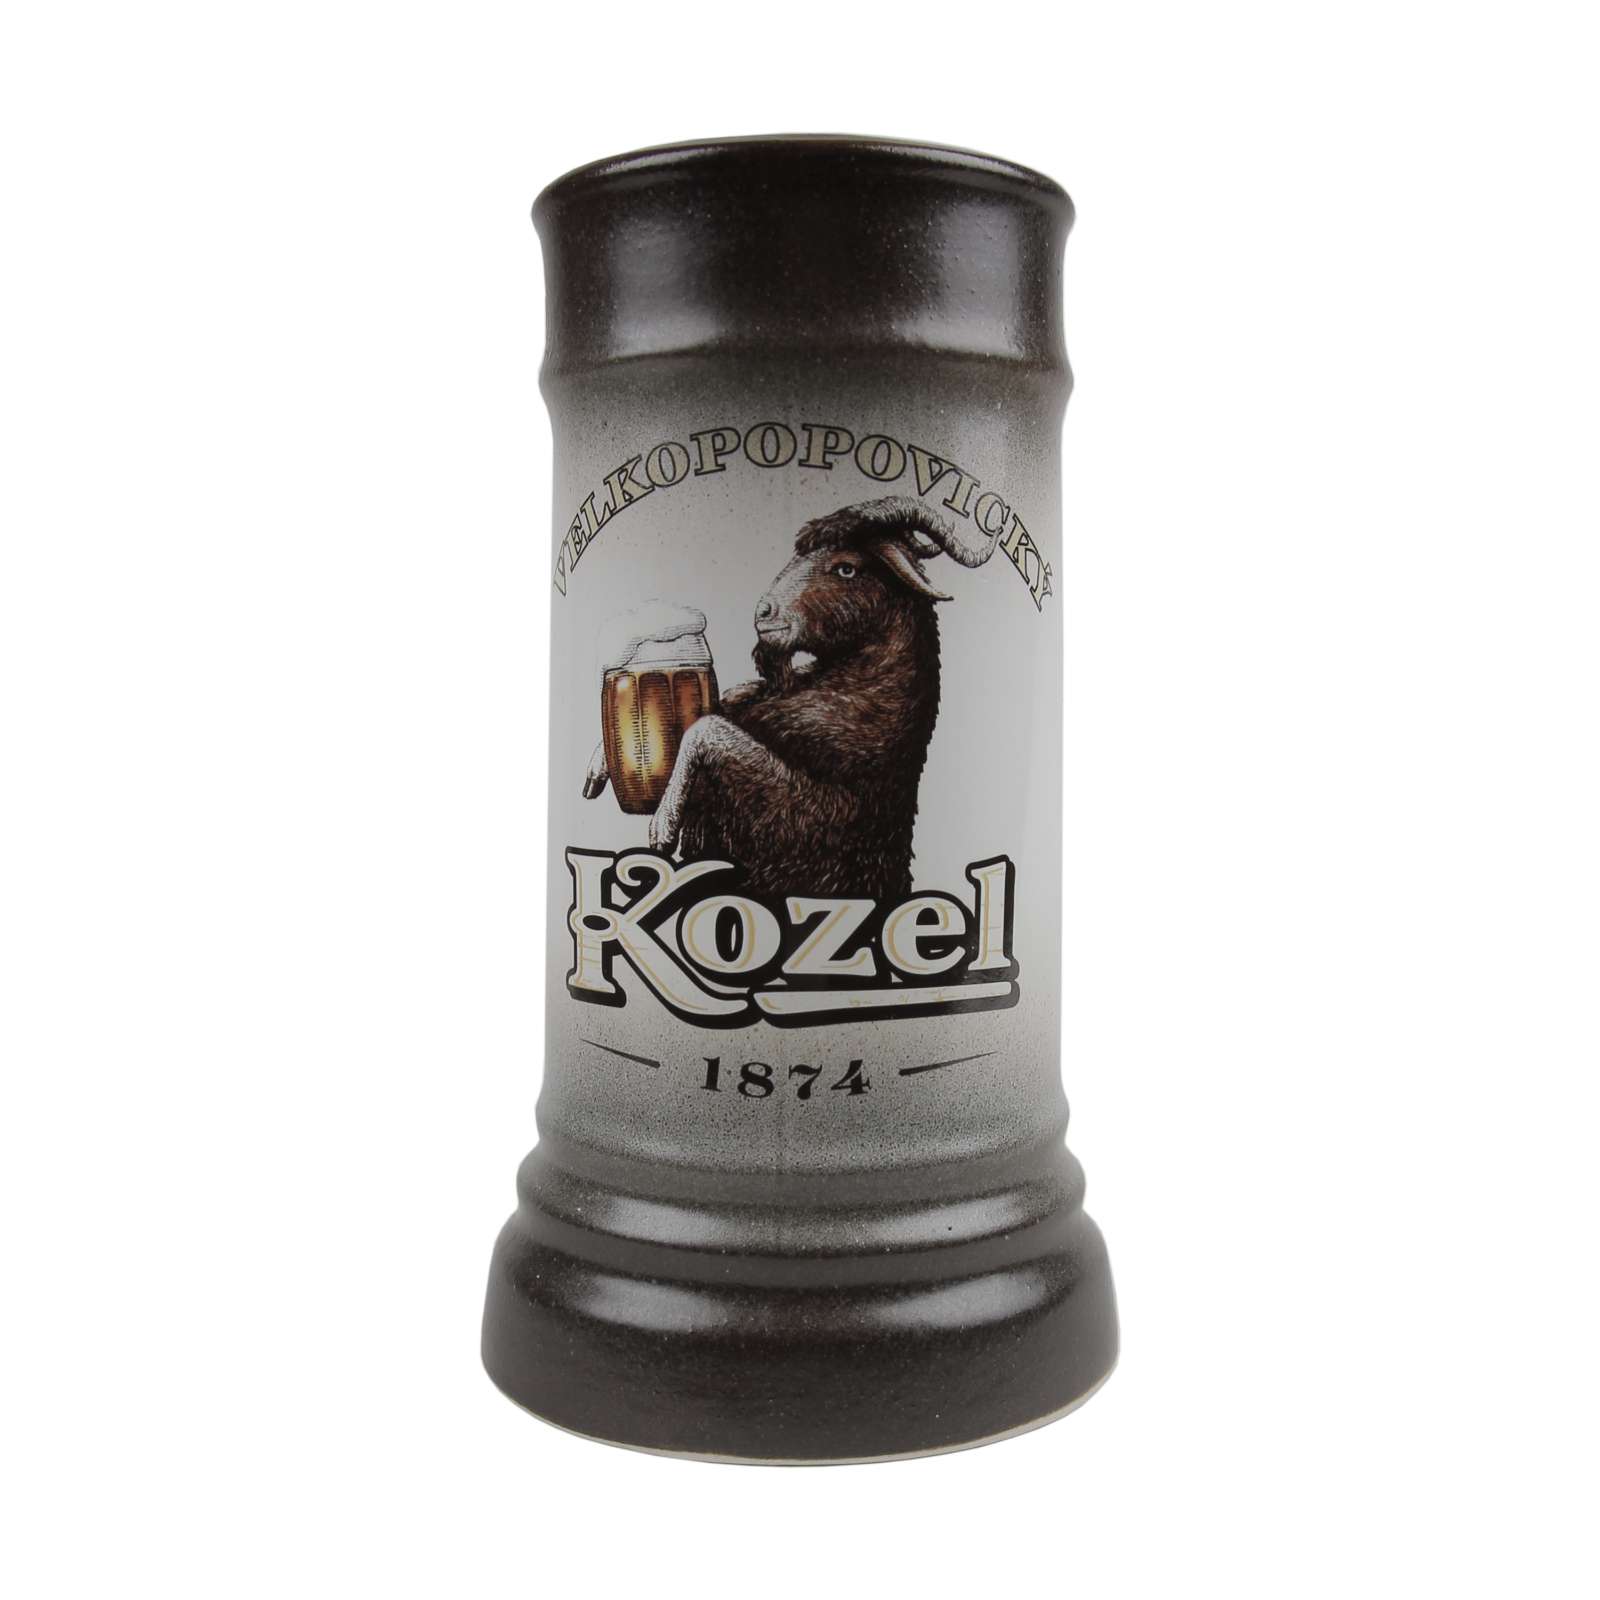 Two-tone Kozel beer mug